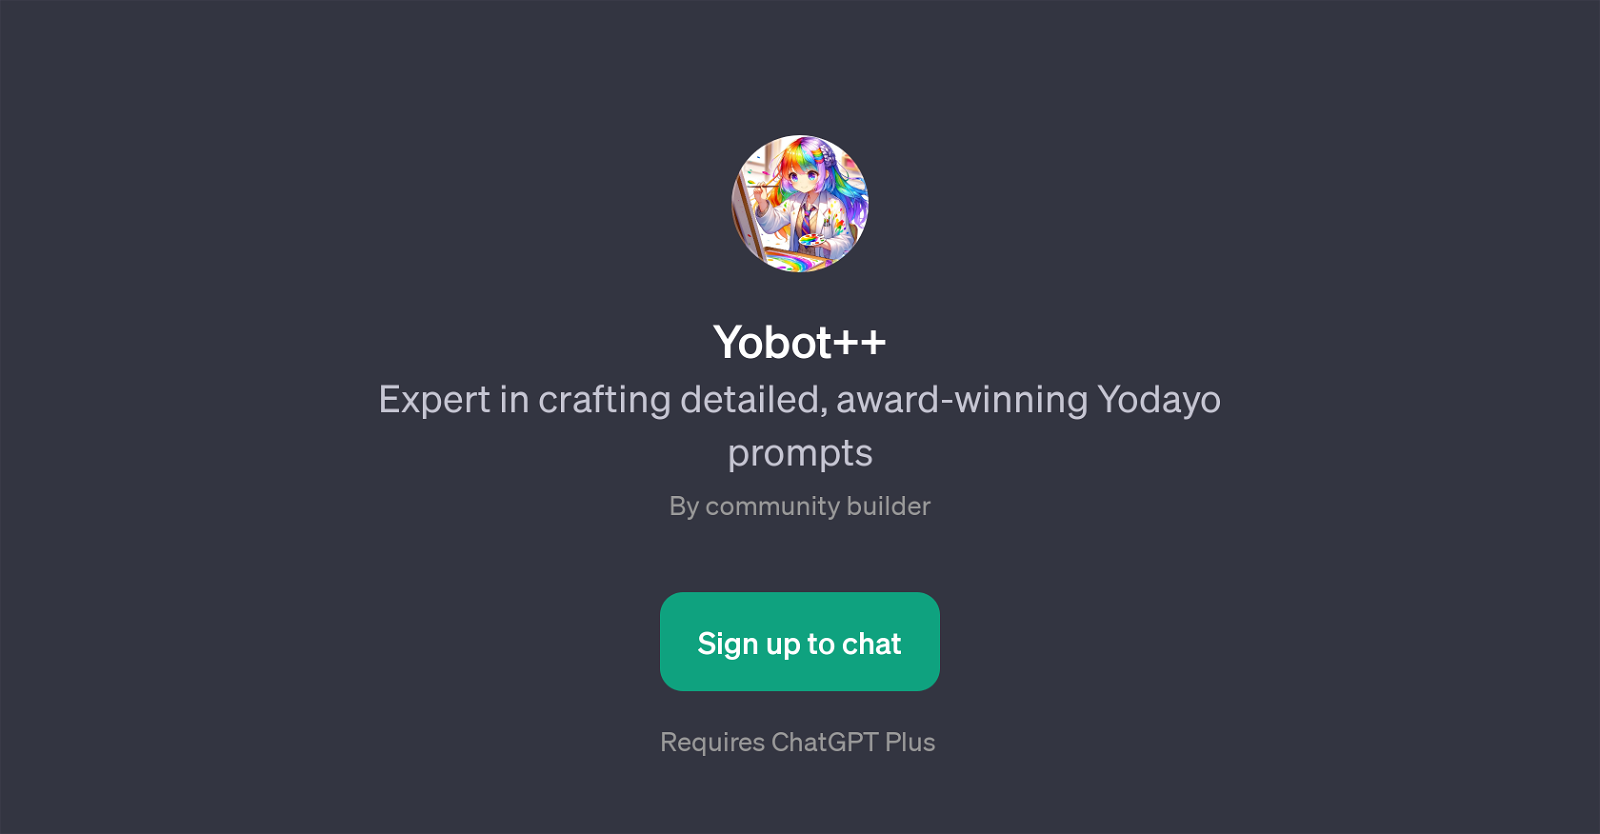 Yobot++ website